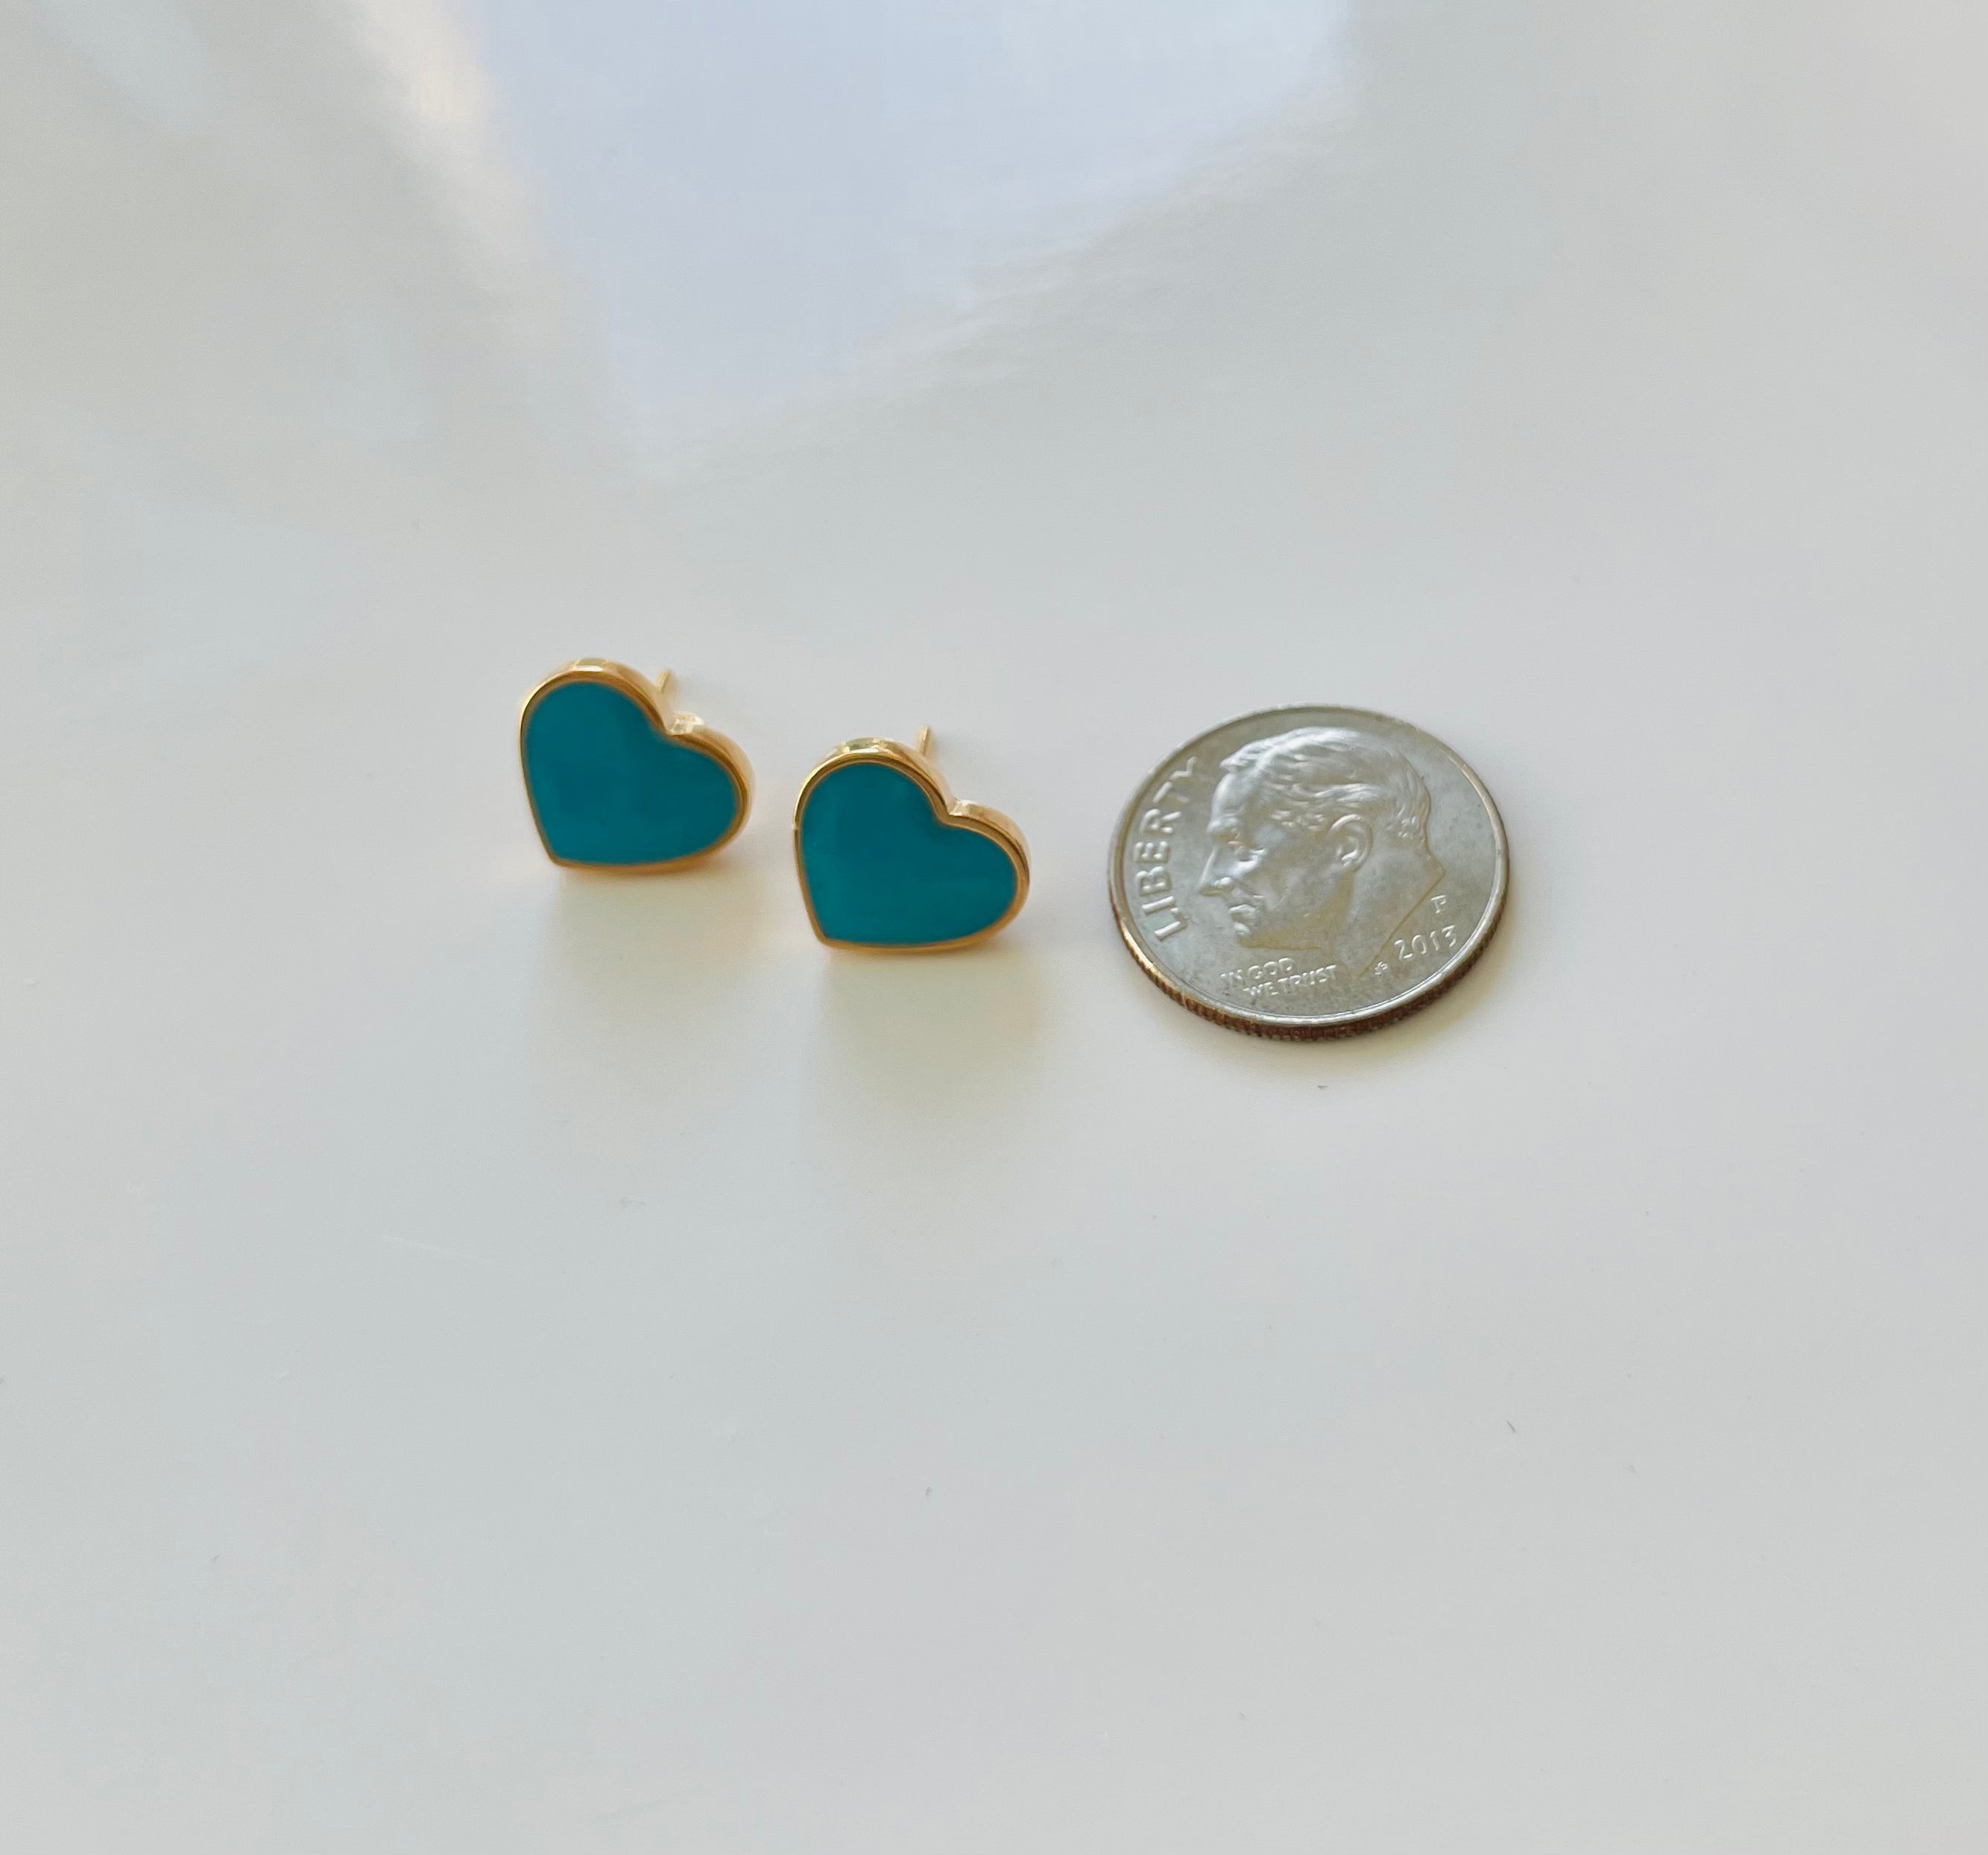 Colored Heart Earrings